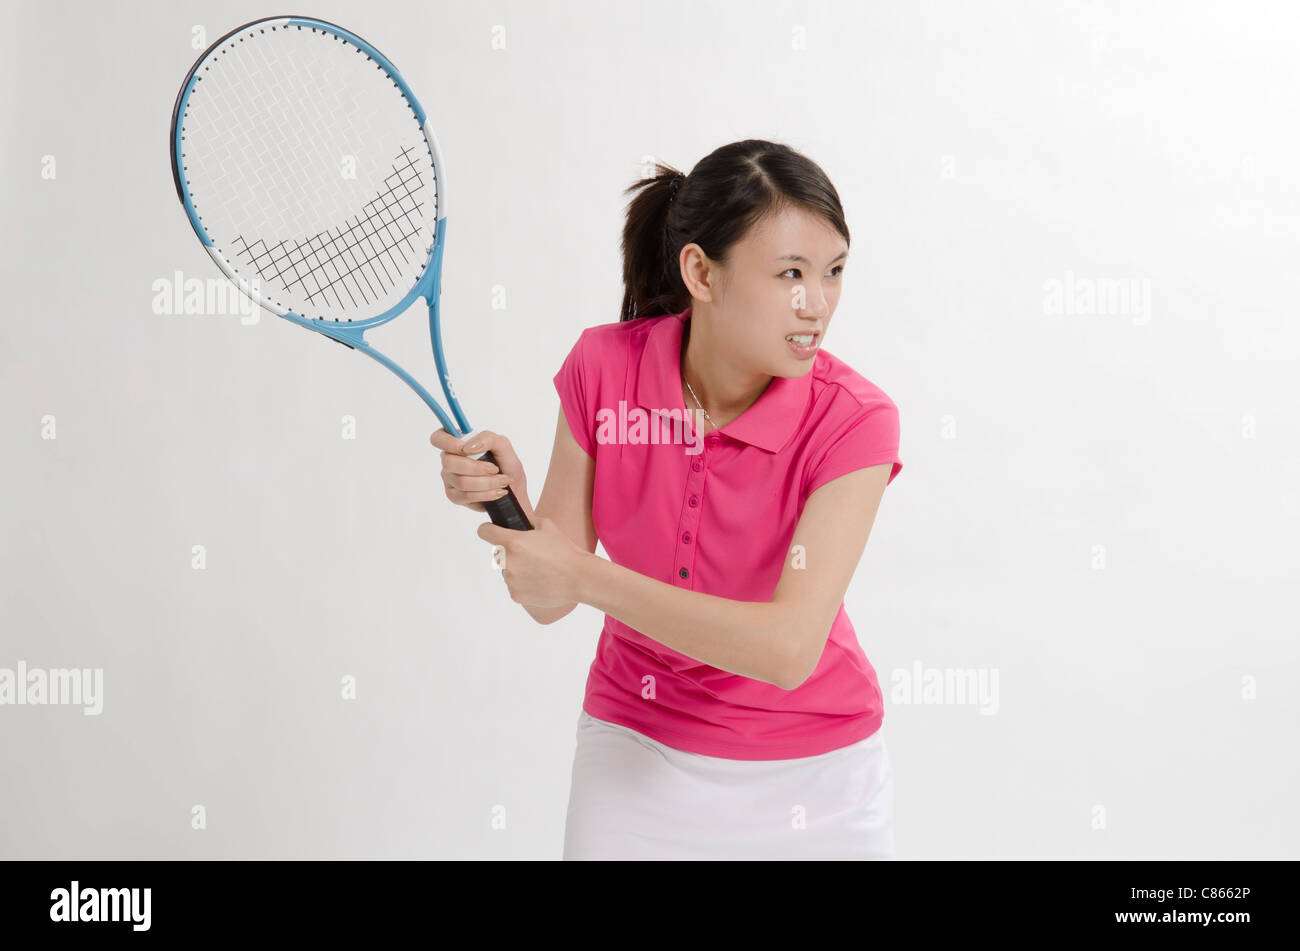 Un tennis player Banque D'Images